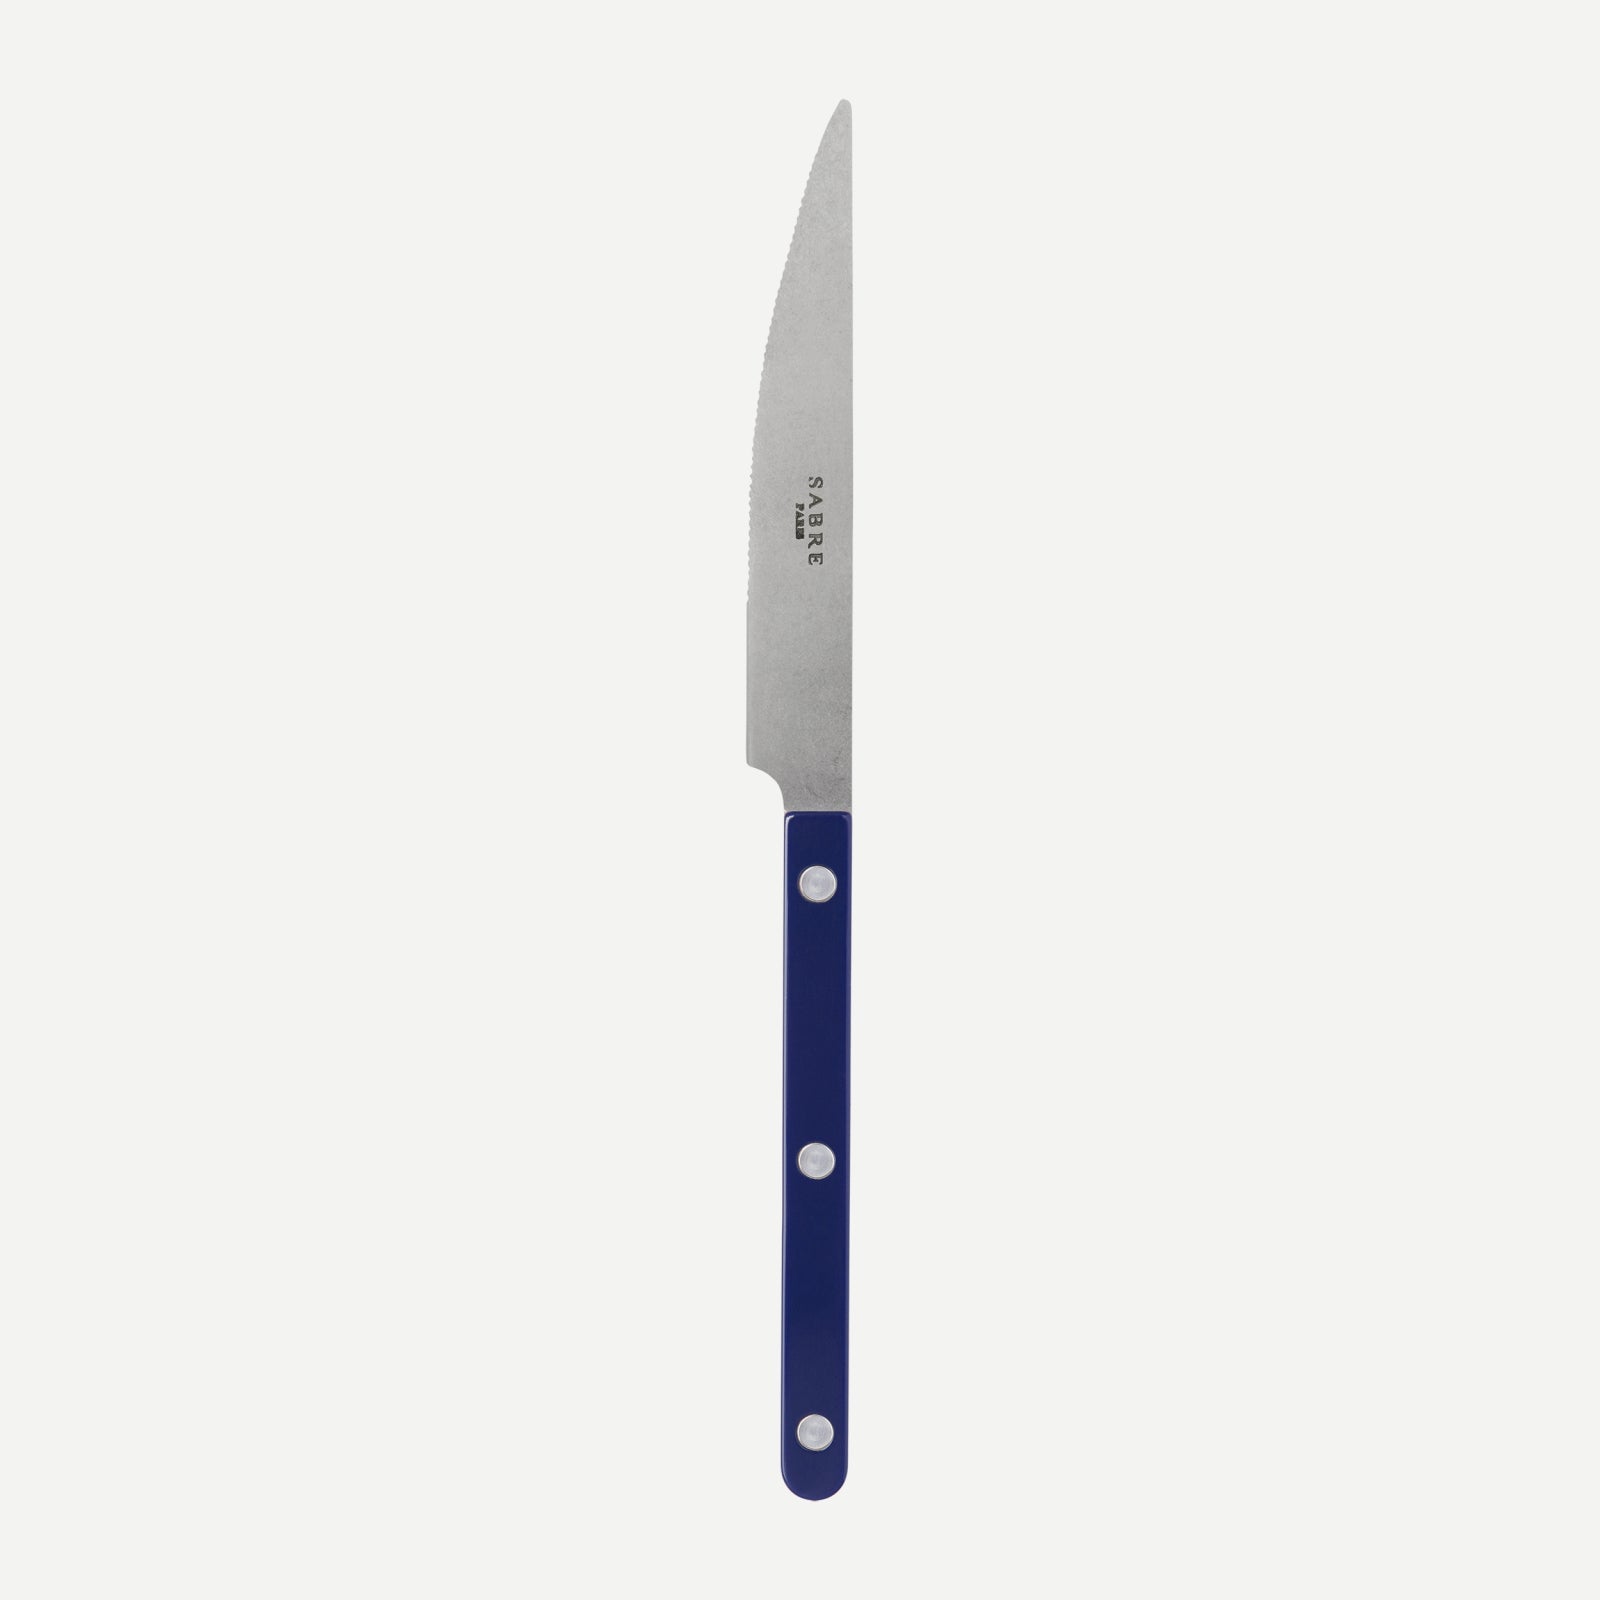 Dinner knife - Bistrot vintage solid - Navy blue